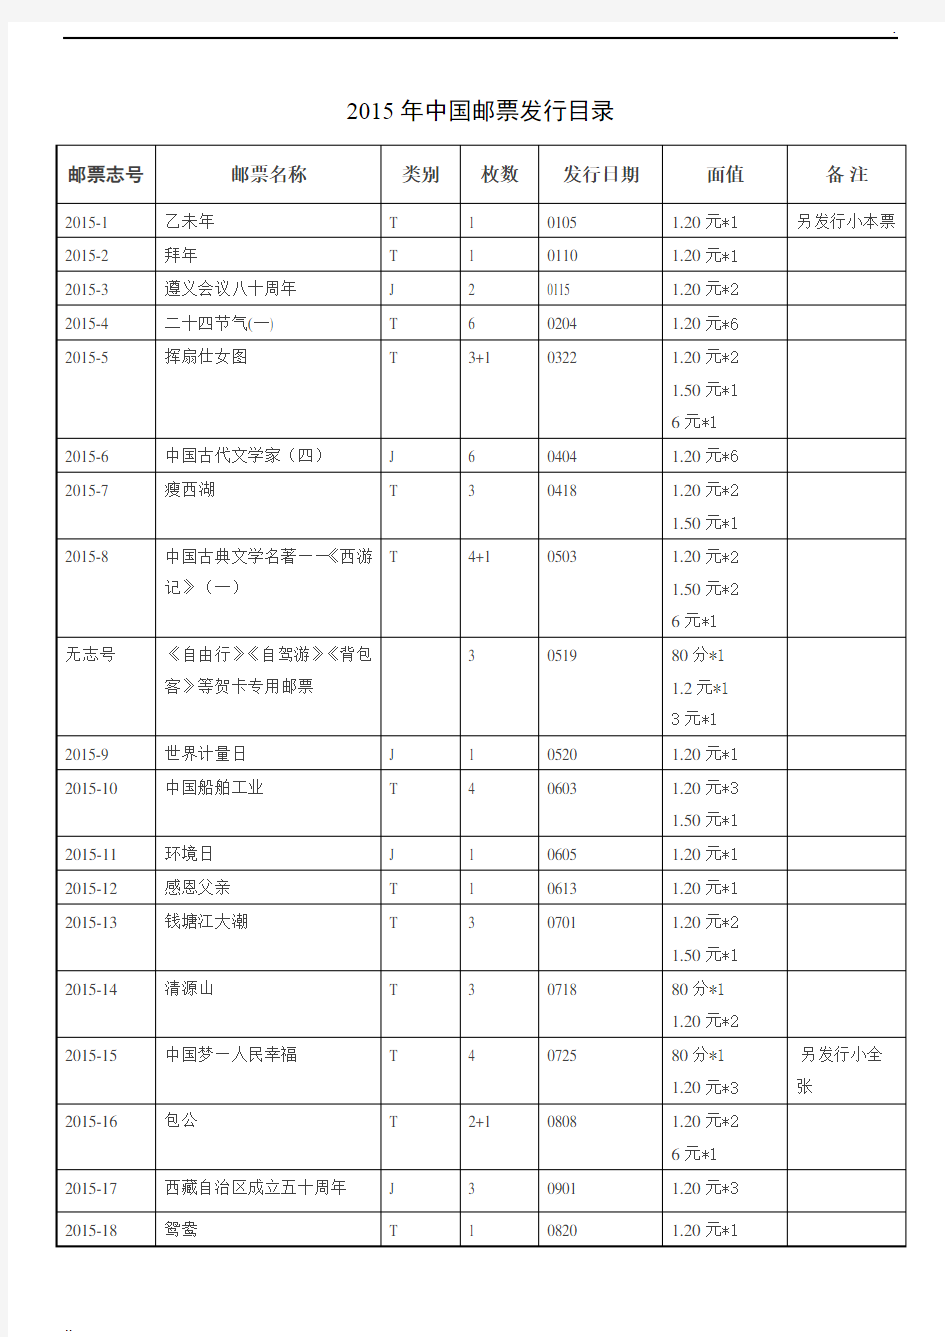 2015年中国邮票发行目录计划图文资料详情